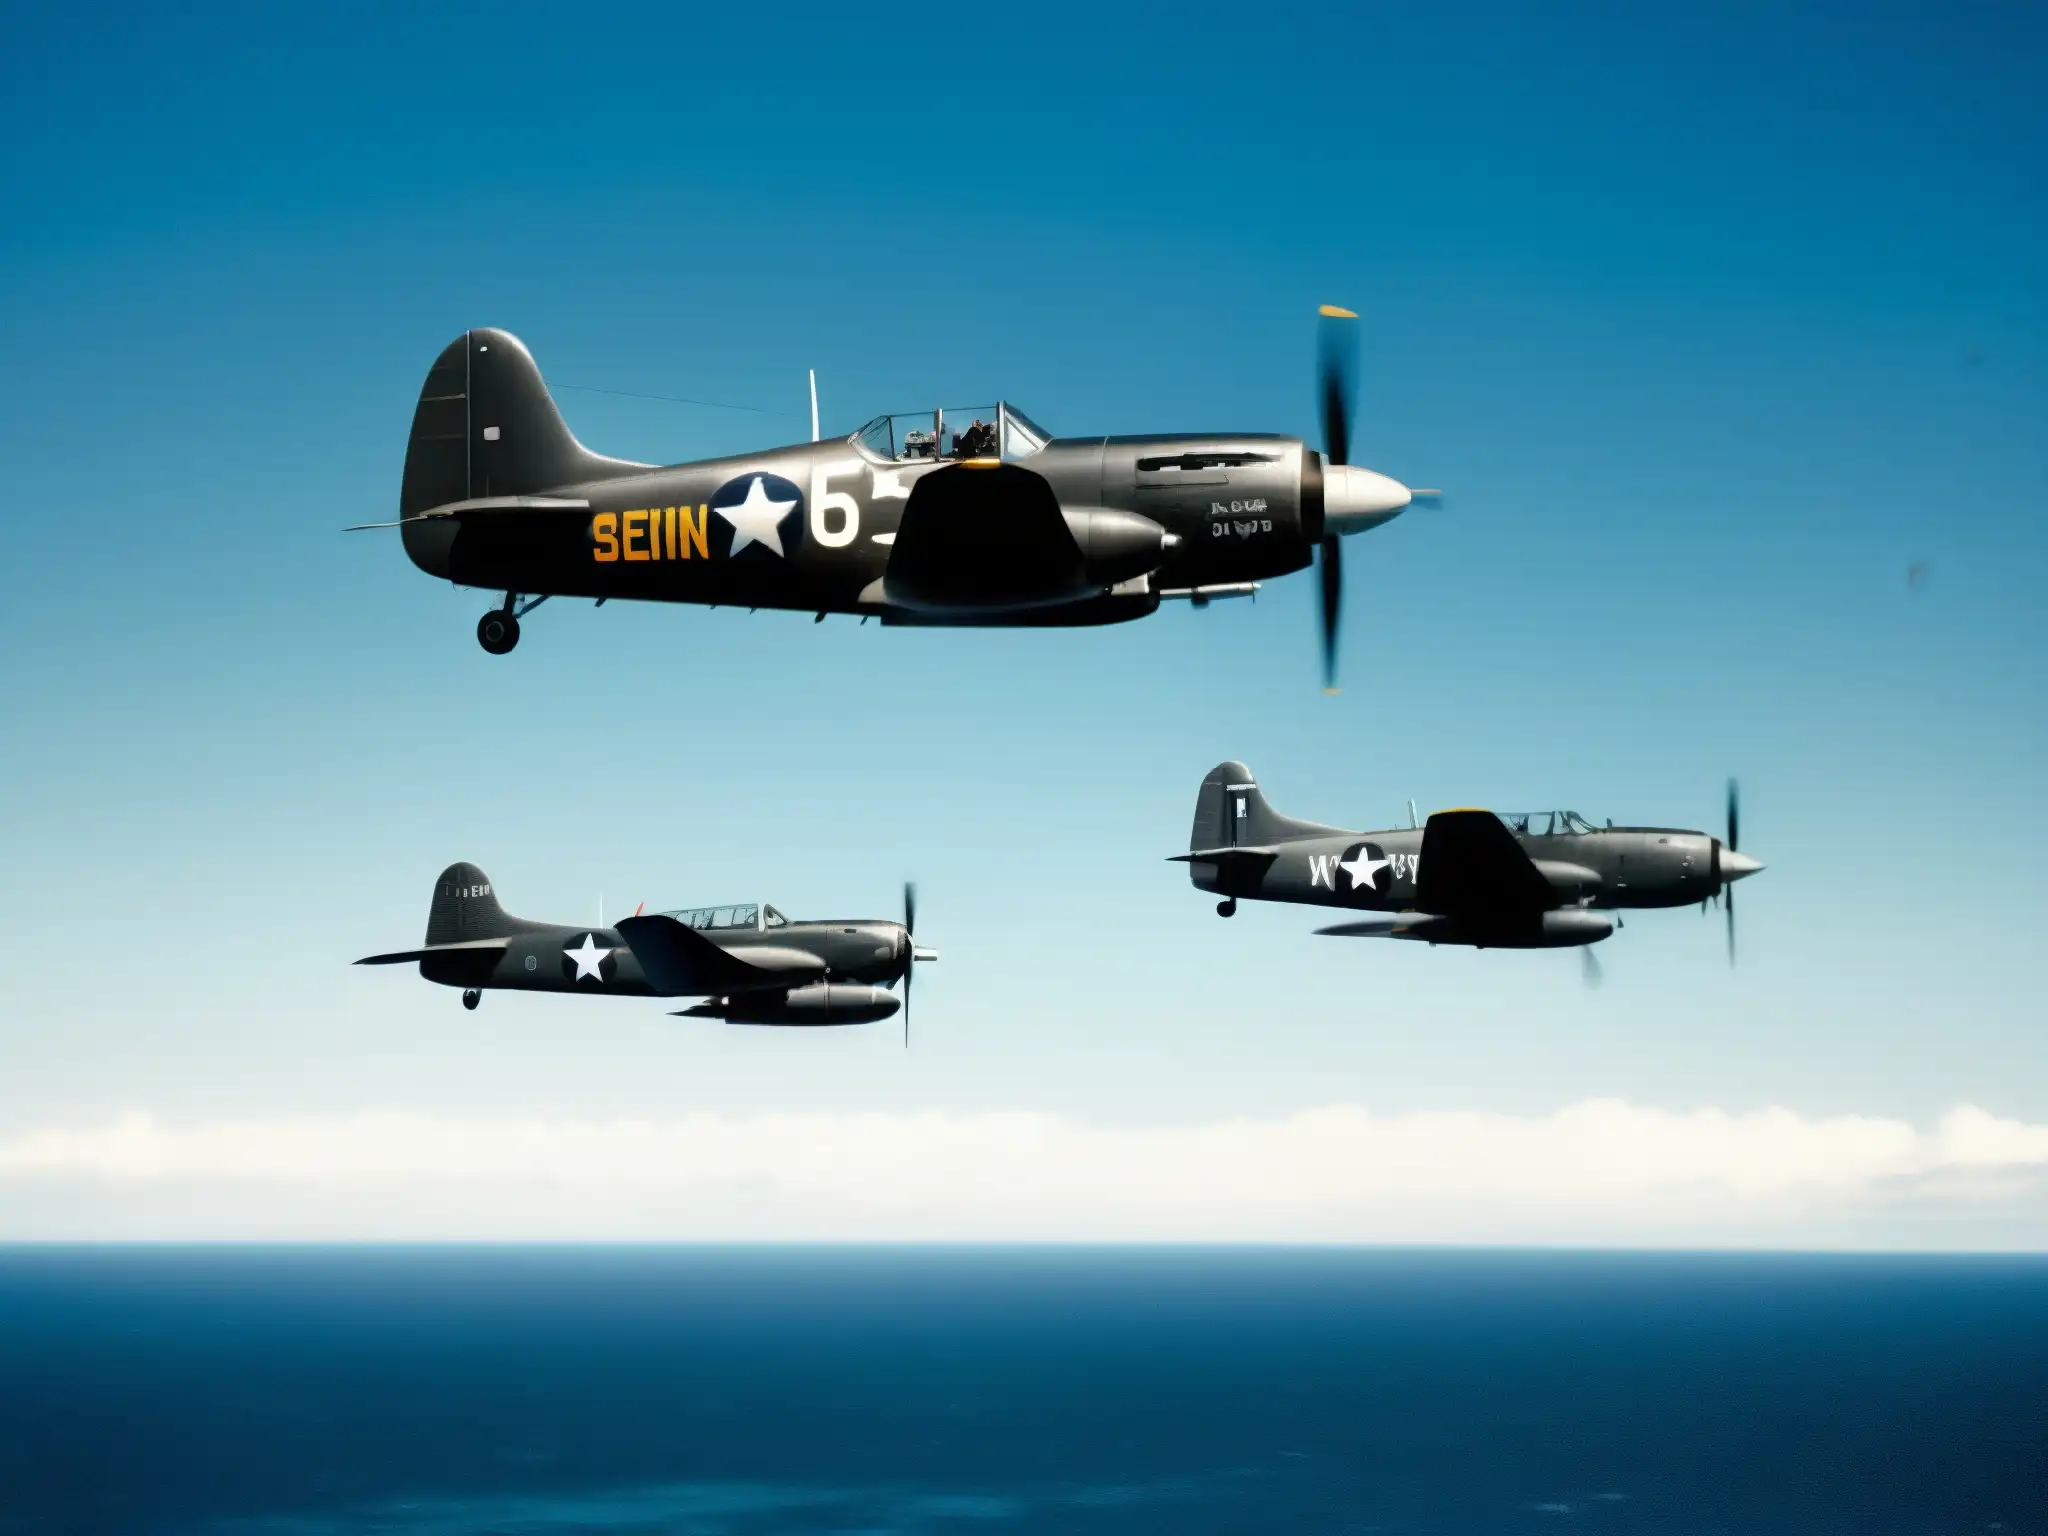 Cinco Avenger bombarderos en vuelo sobre el océano Atlántico, evocando la misteriosa desaparición del Vuelo 19 en el Triángulo de las Bermudas